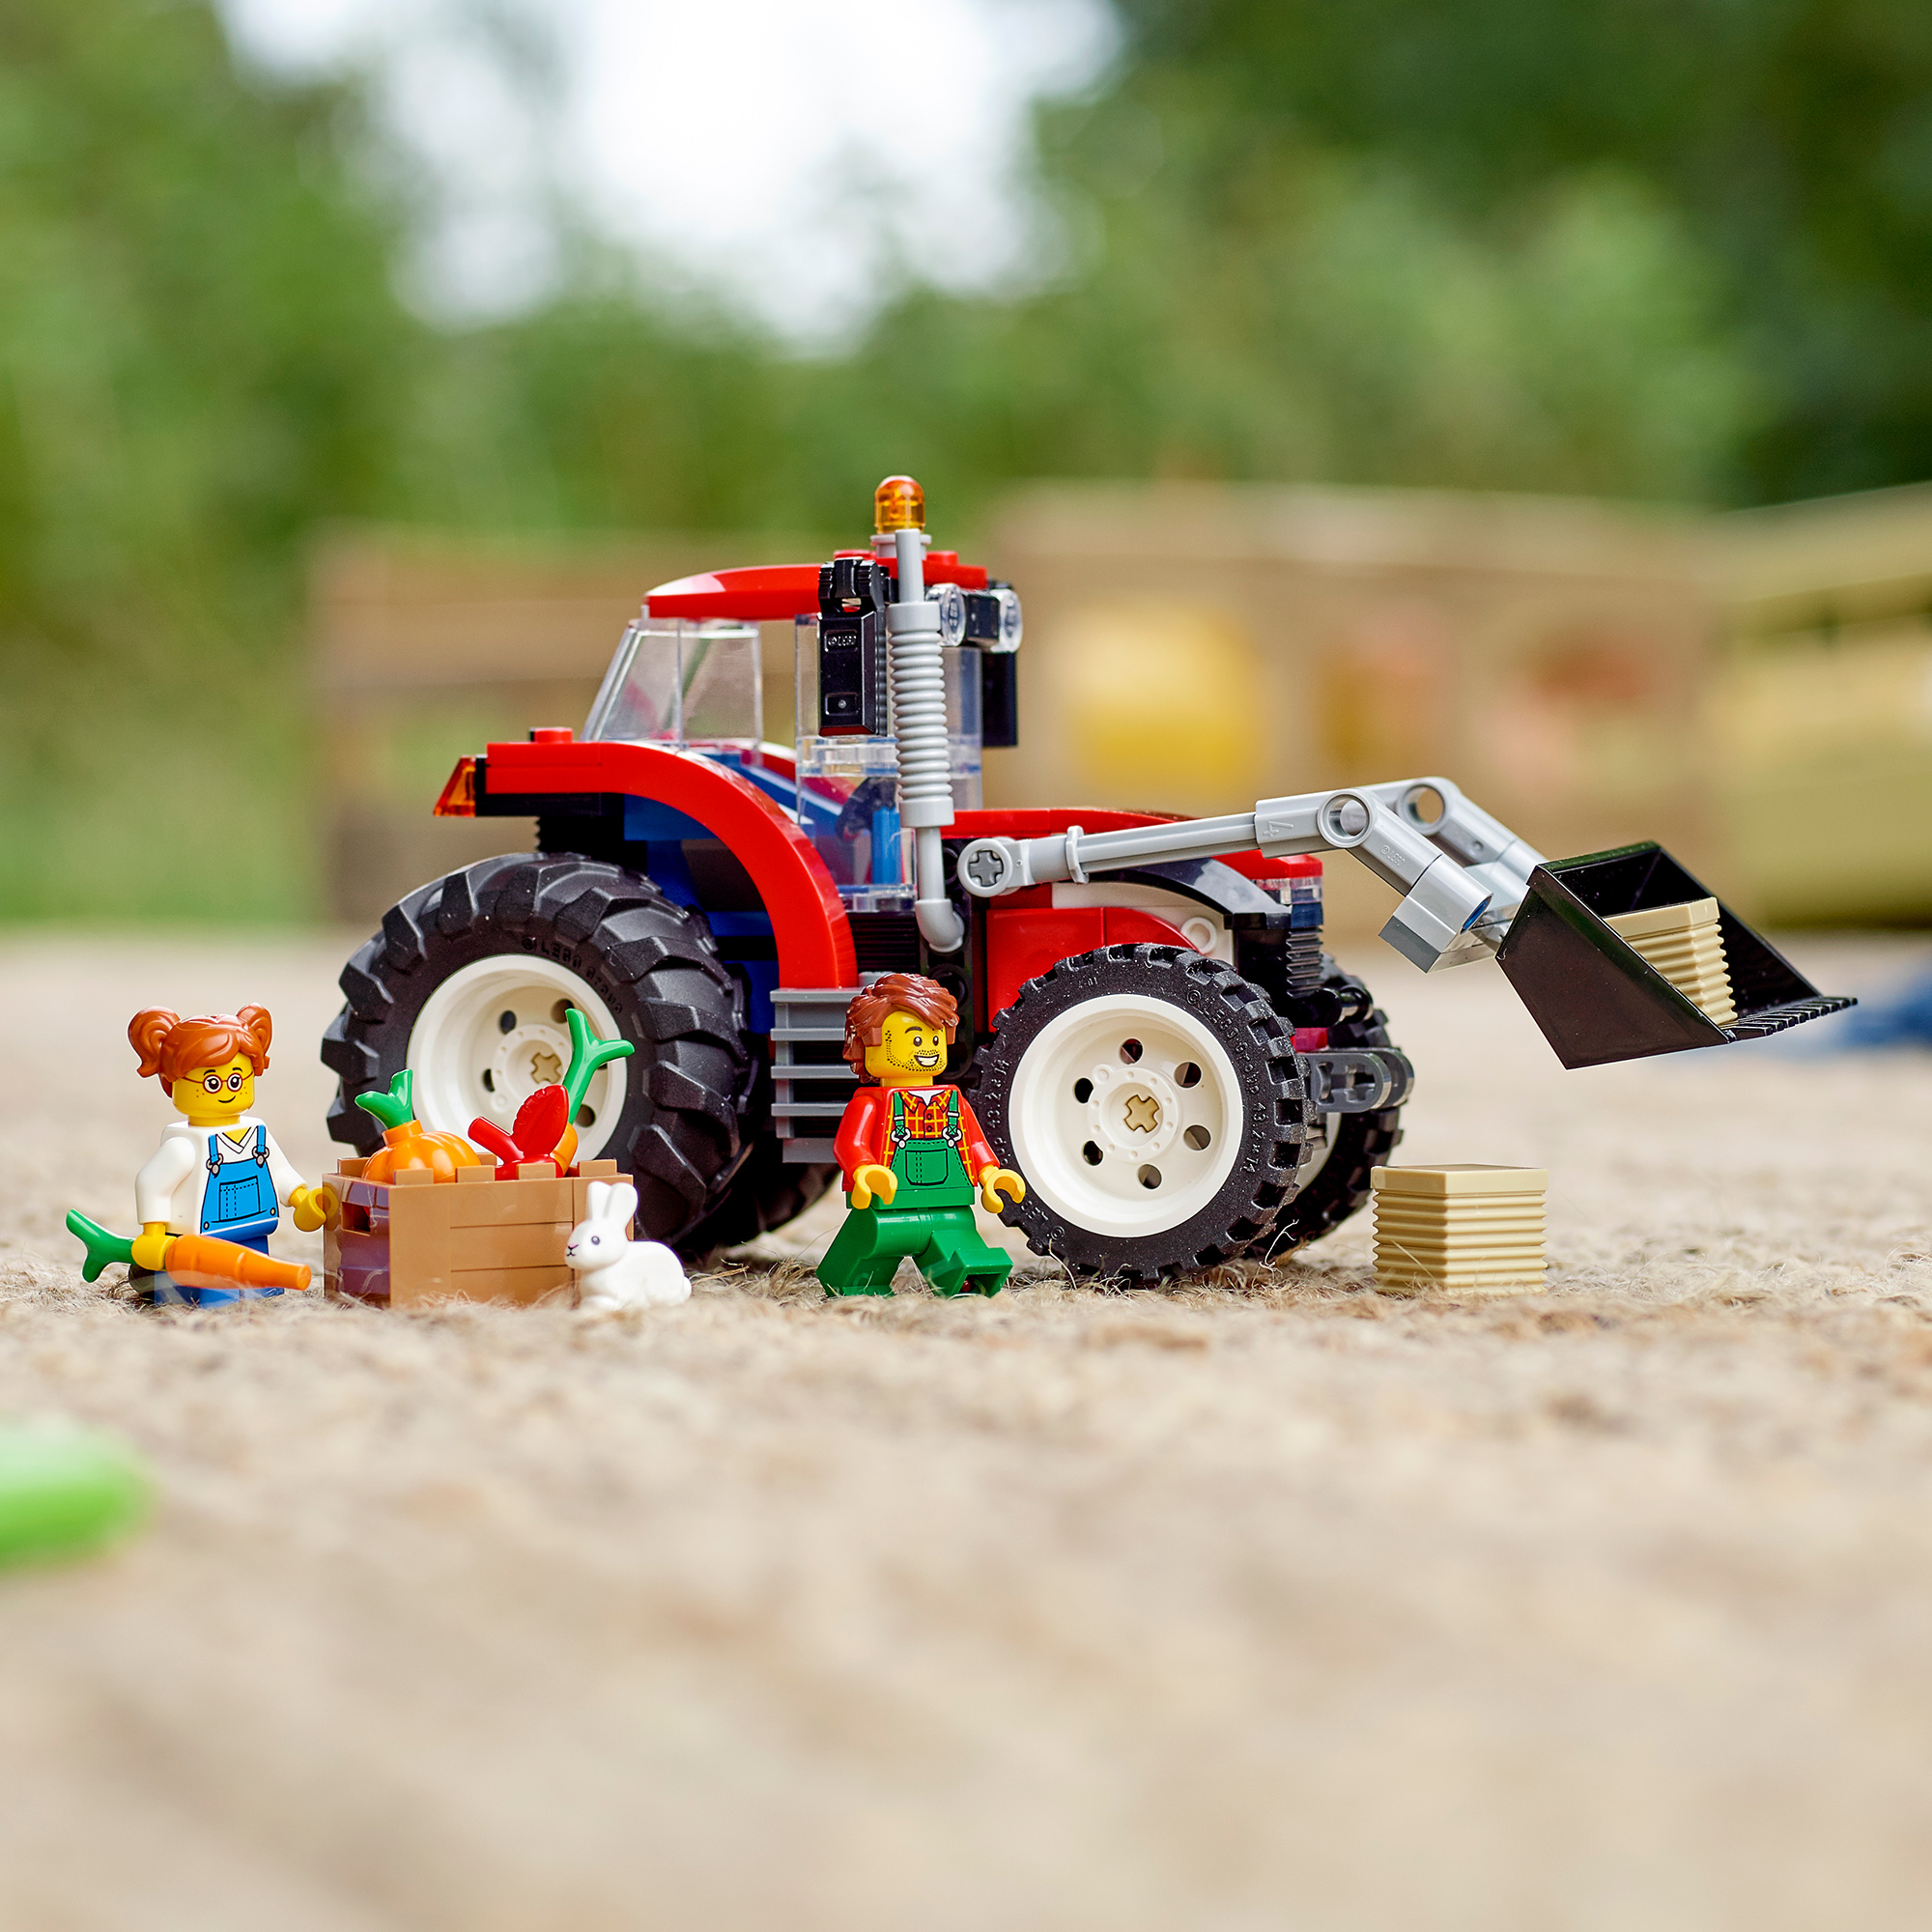 City Bausatz, LEGO Mehrfarbig Traktor 60287